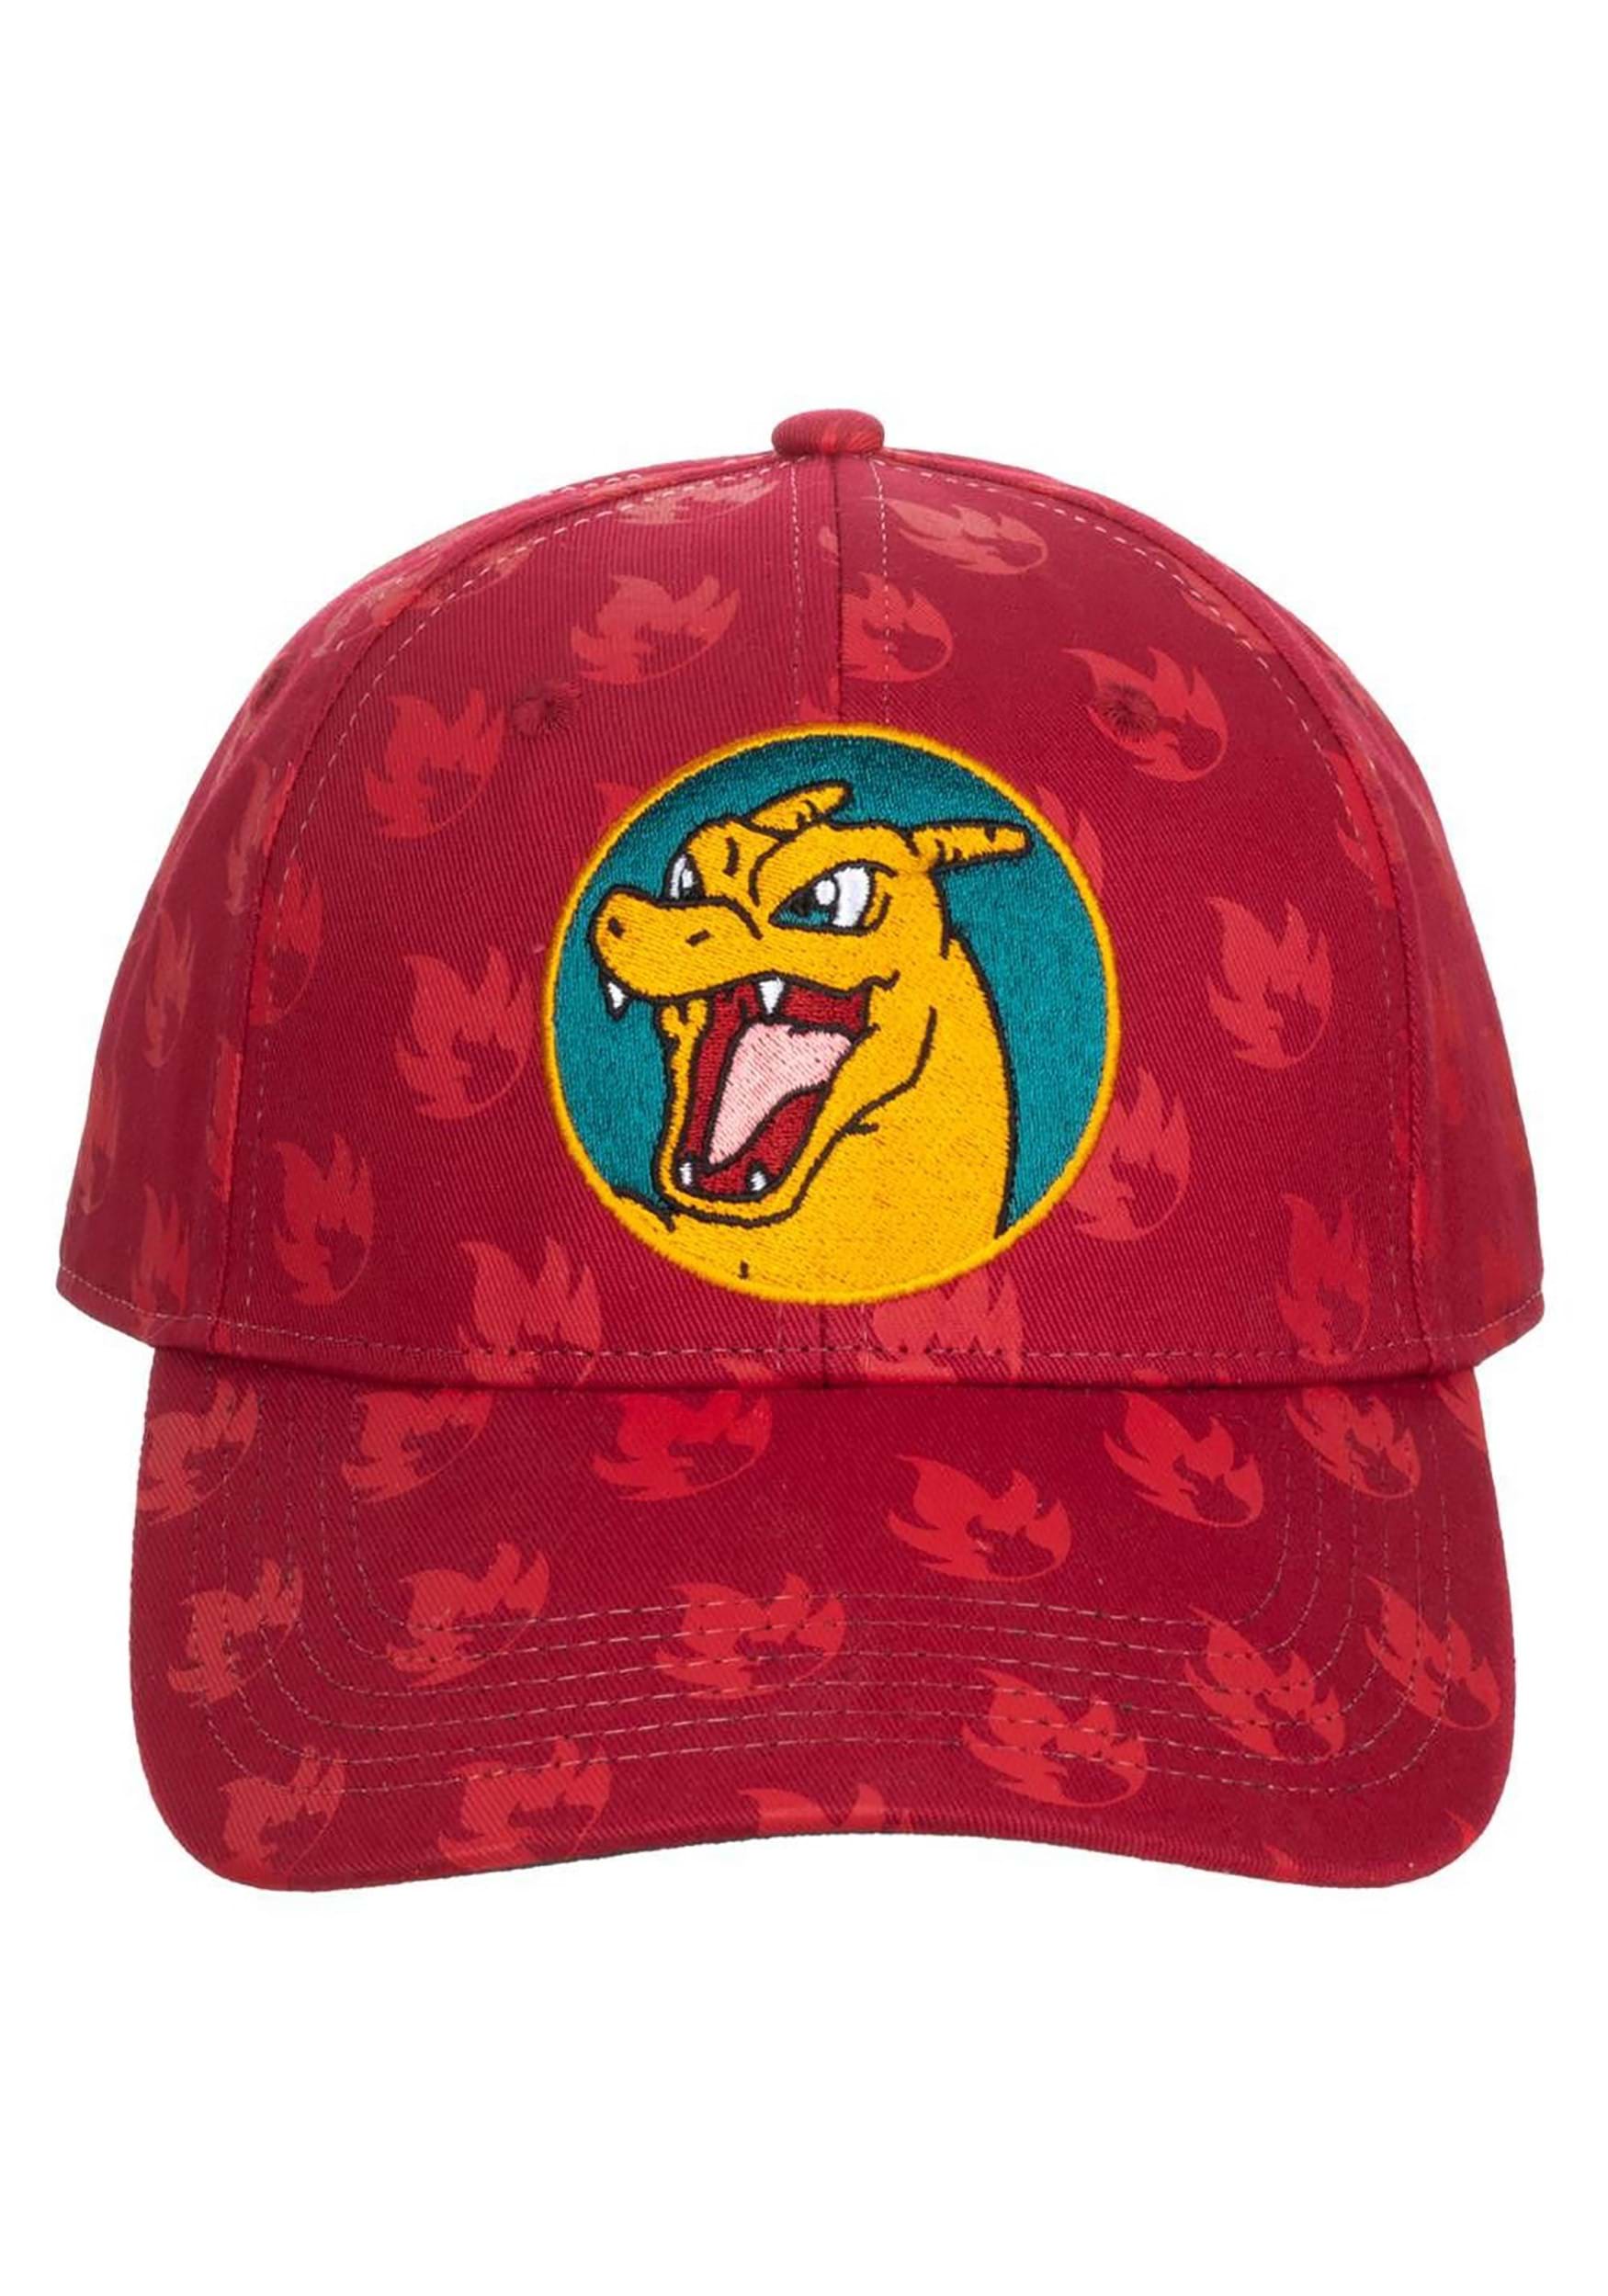 Pokémon Charizard decal Hat